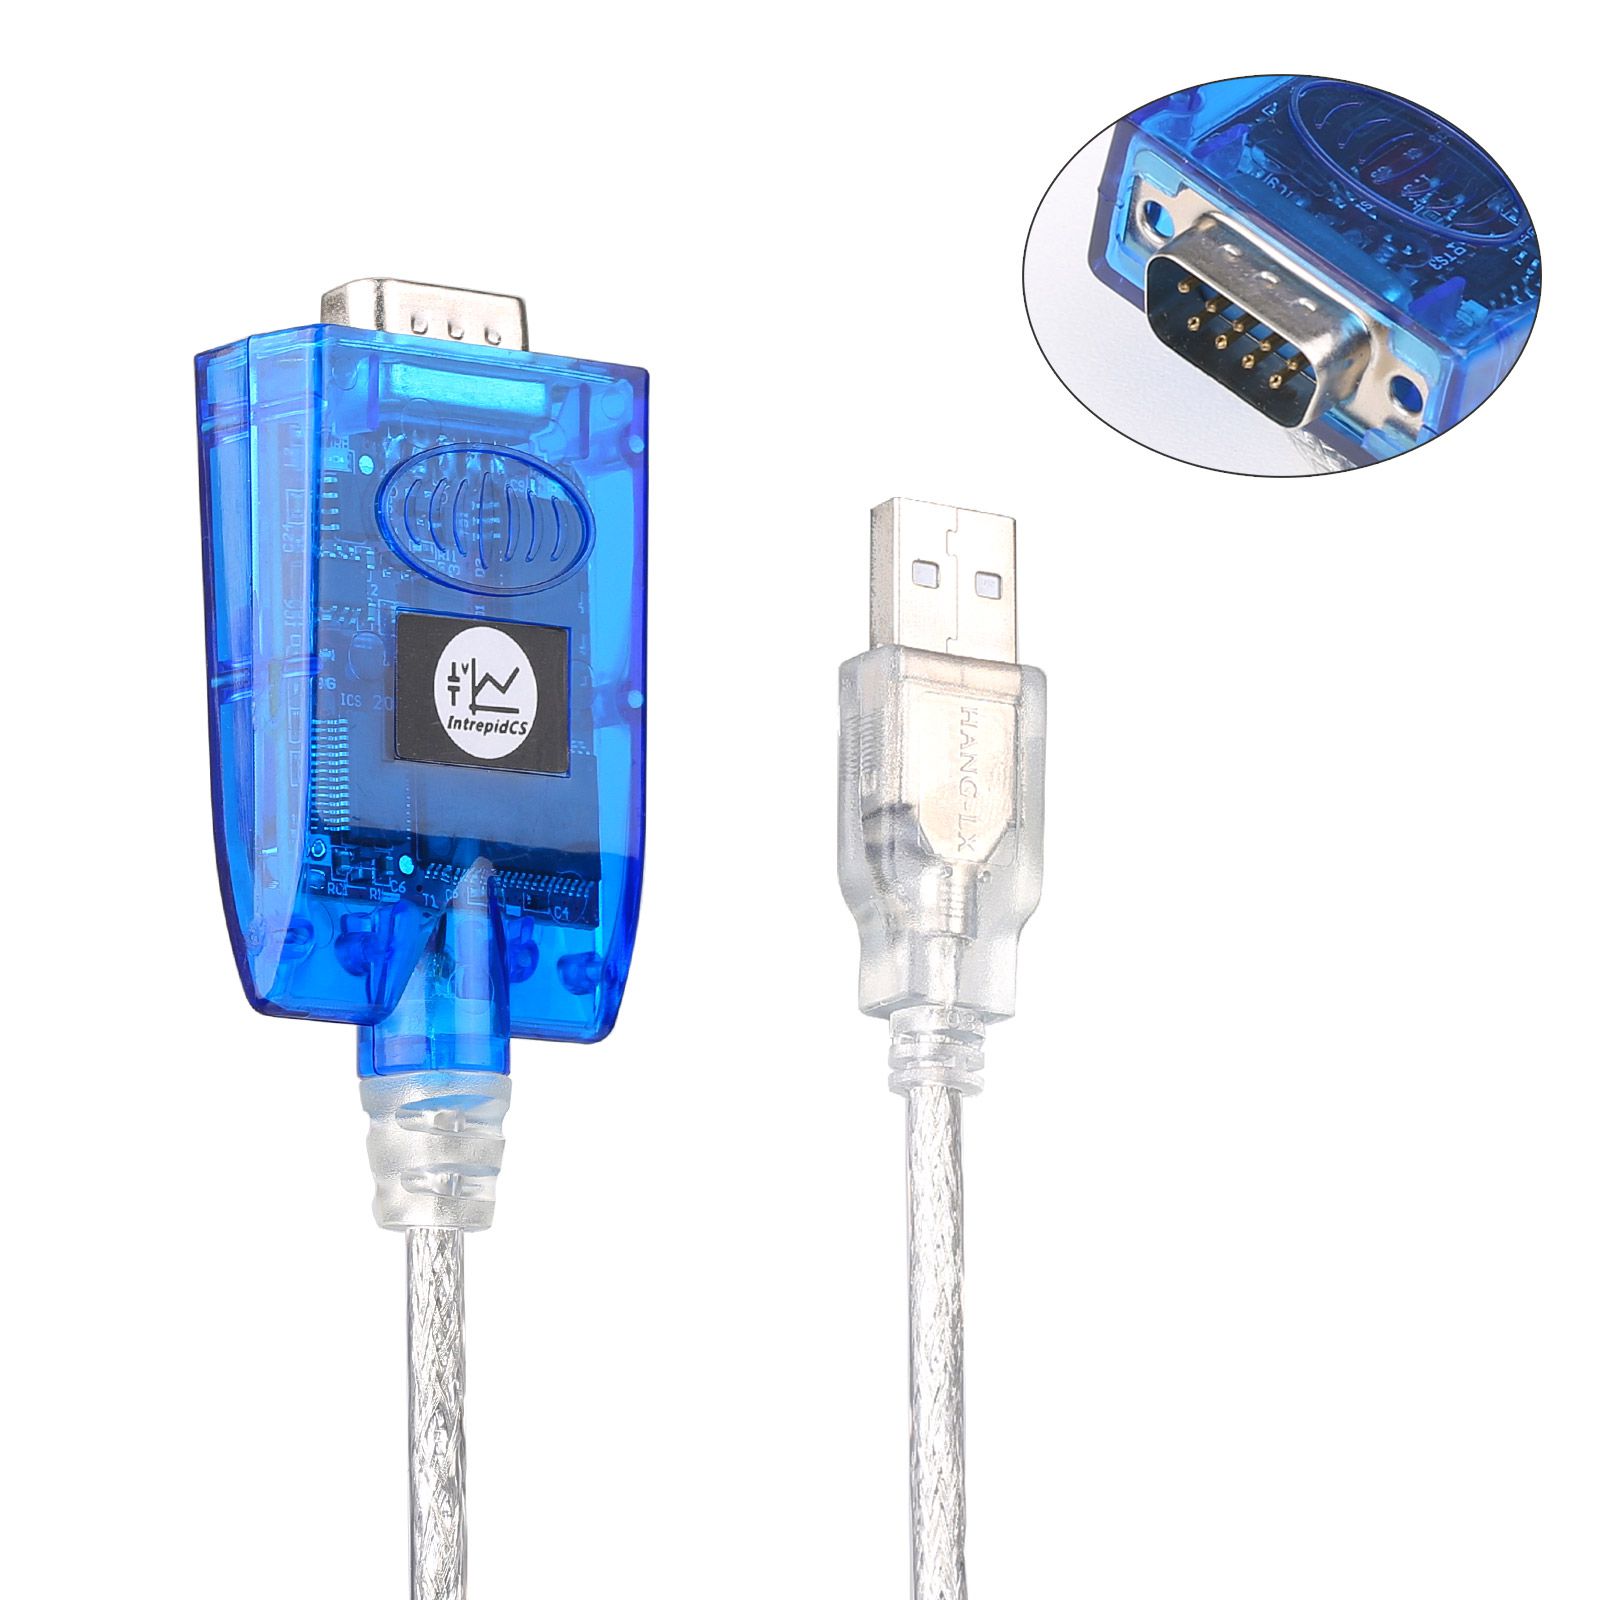 El dispositivo de prueba de la red can del automóvil USB V - can3 está conectado a la red can de alimentación automática de PC y usb.